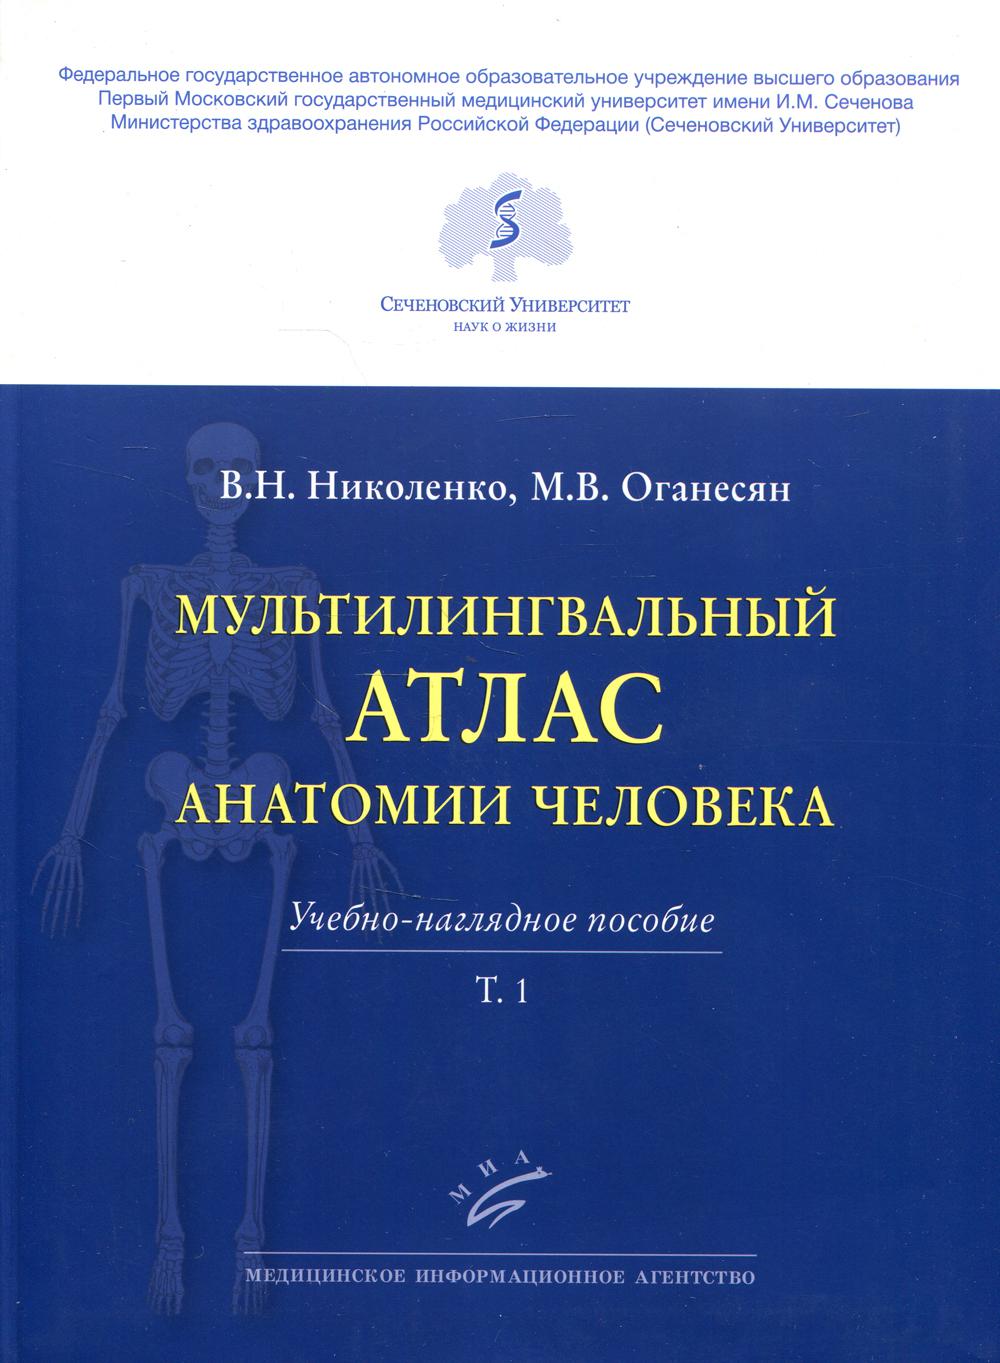 Мультилингвальный атлас анатомии человека. Т. 1: Учебно-наглядное пособие